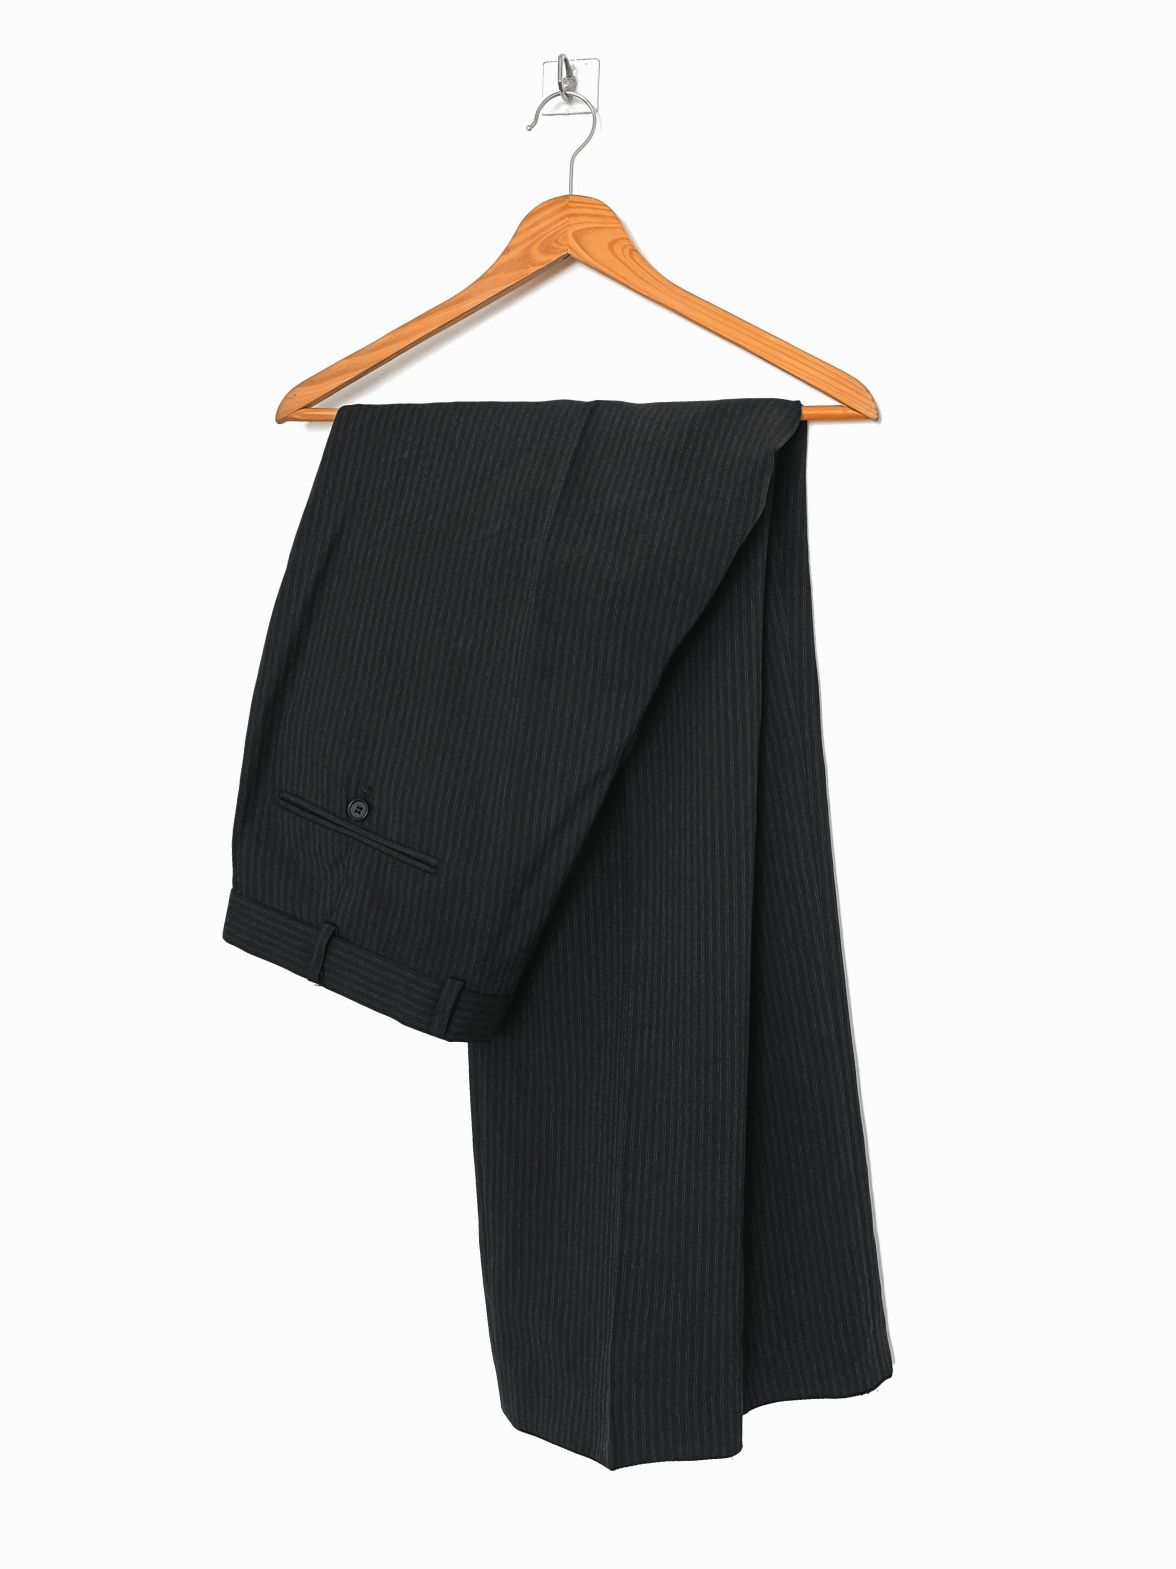 Spodnie męskie typu Chino z tkaniny w prążki | Biaggini XL